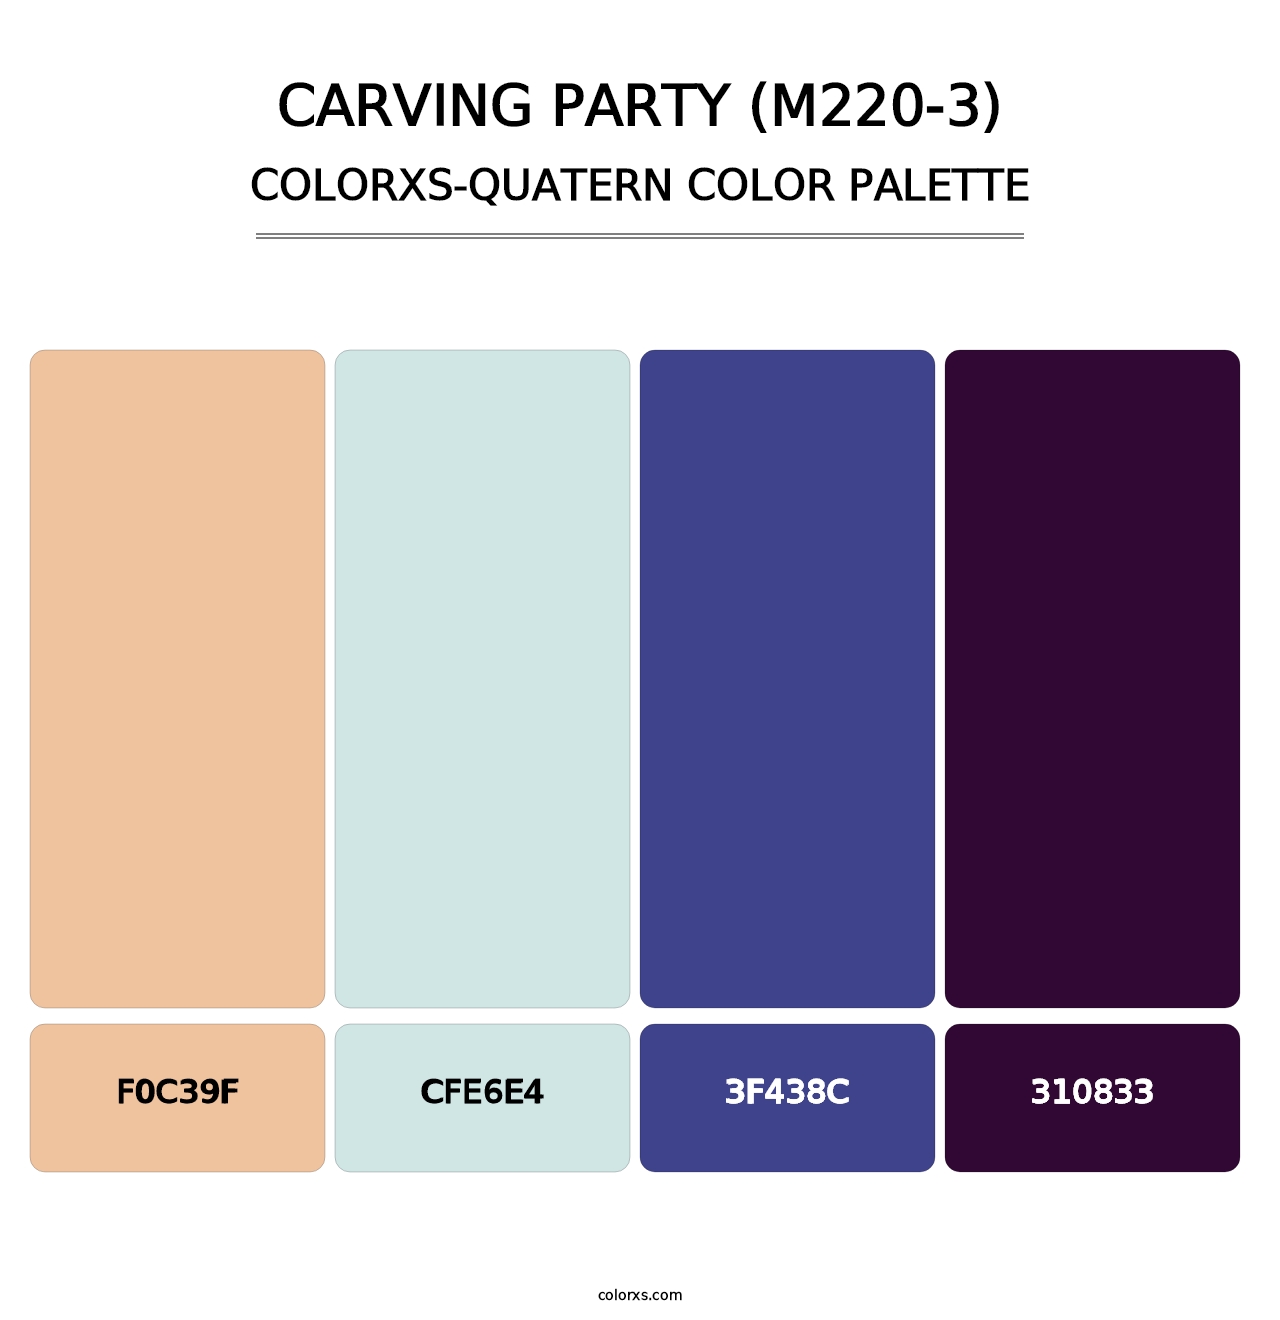 Carving Party (M220-3) - Colorxs Quatern Palette